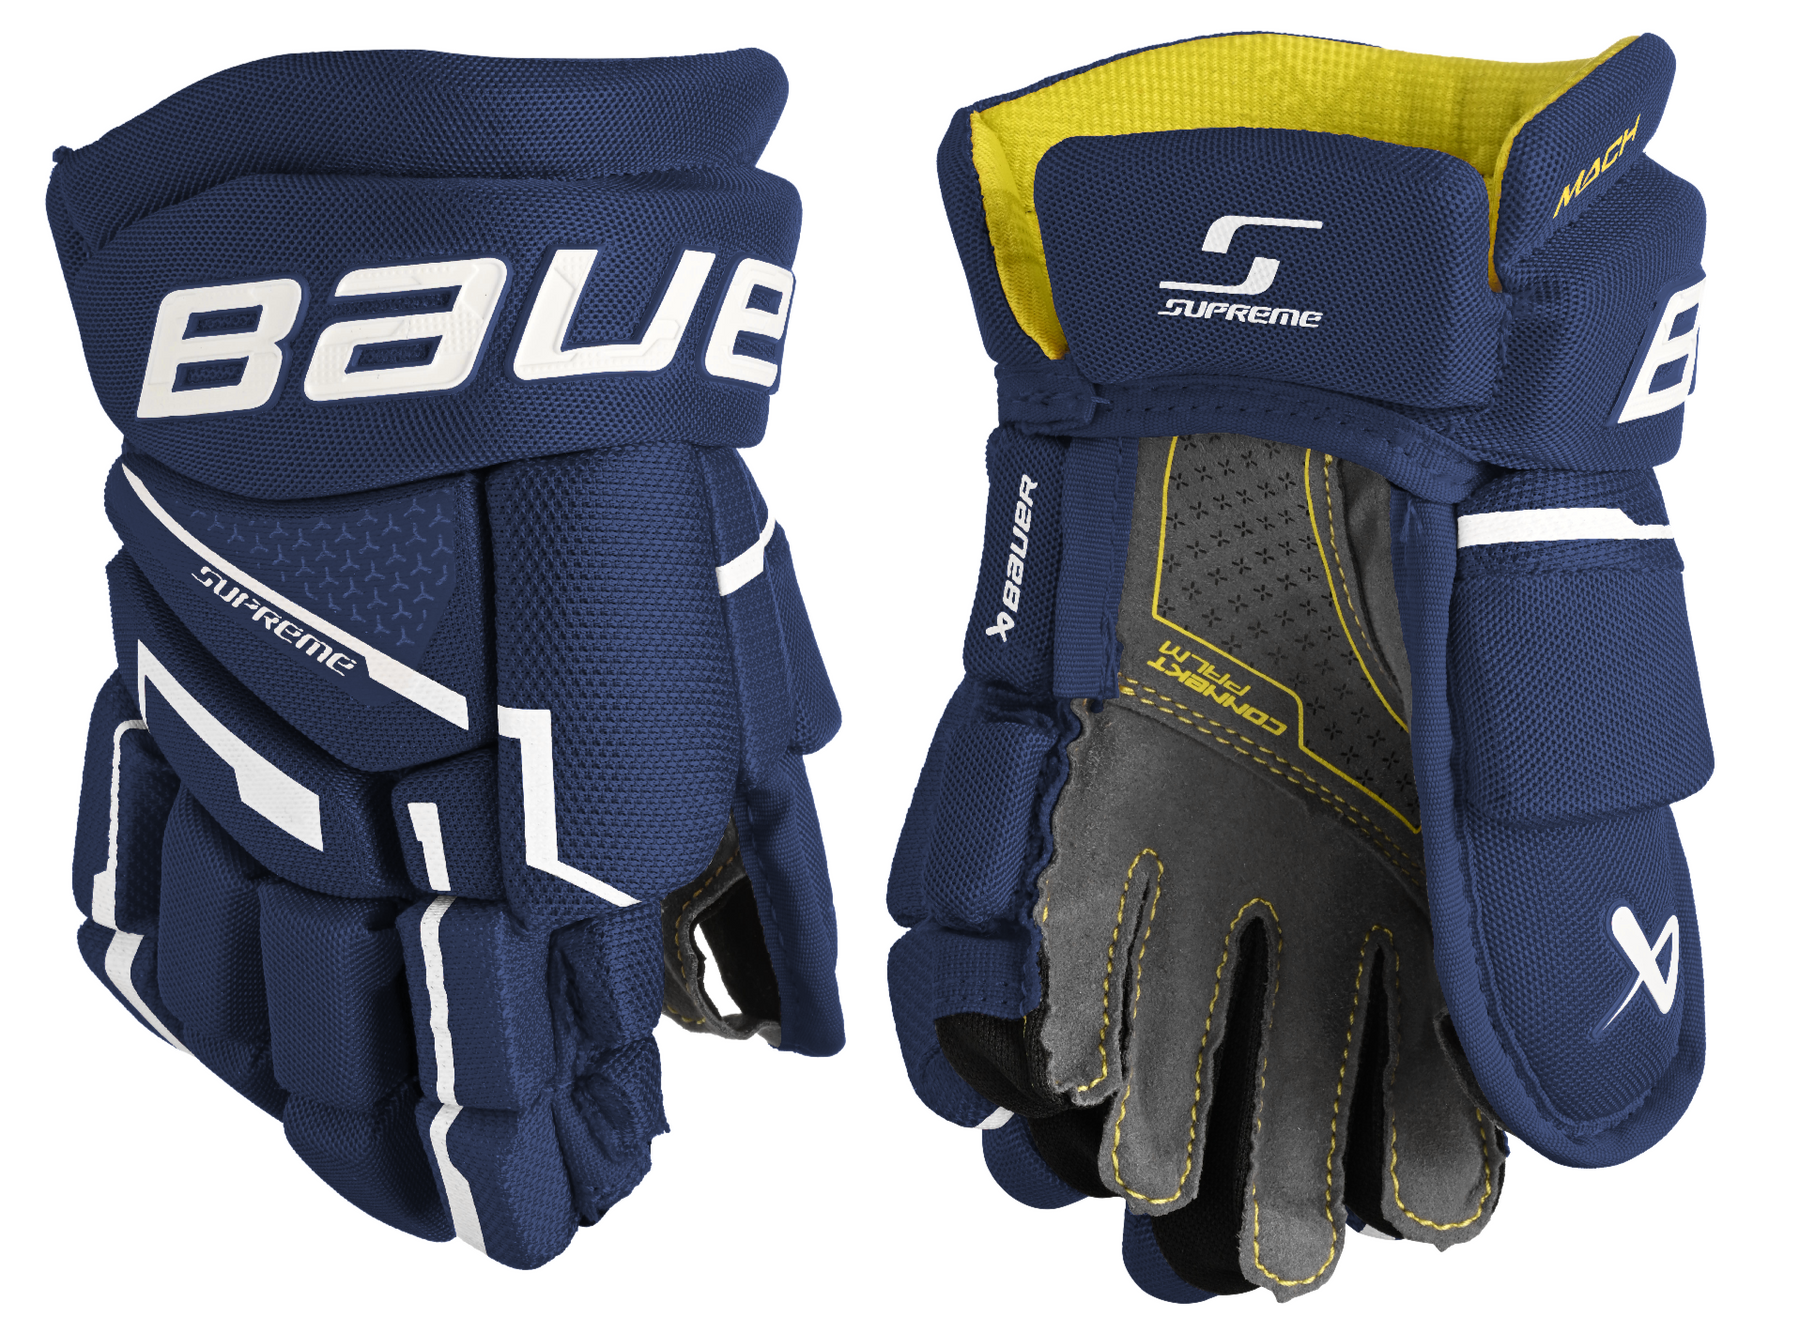 Bauer Supreme Mach Youth Hockey Gloves